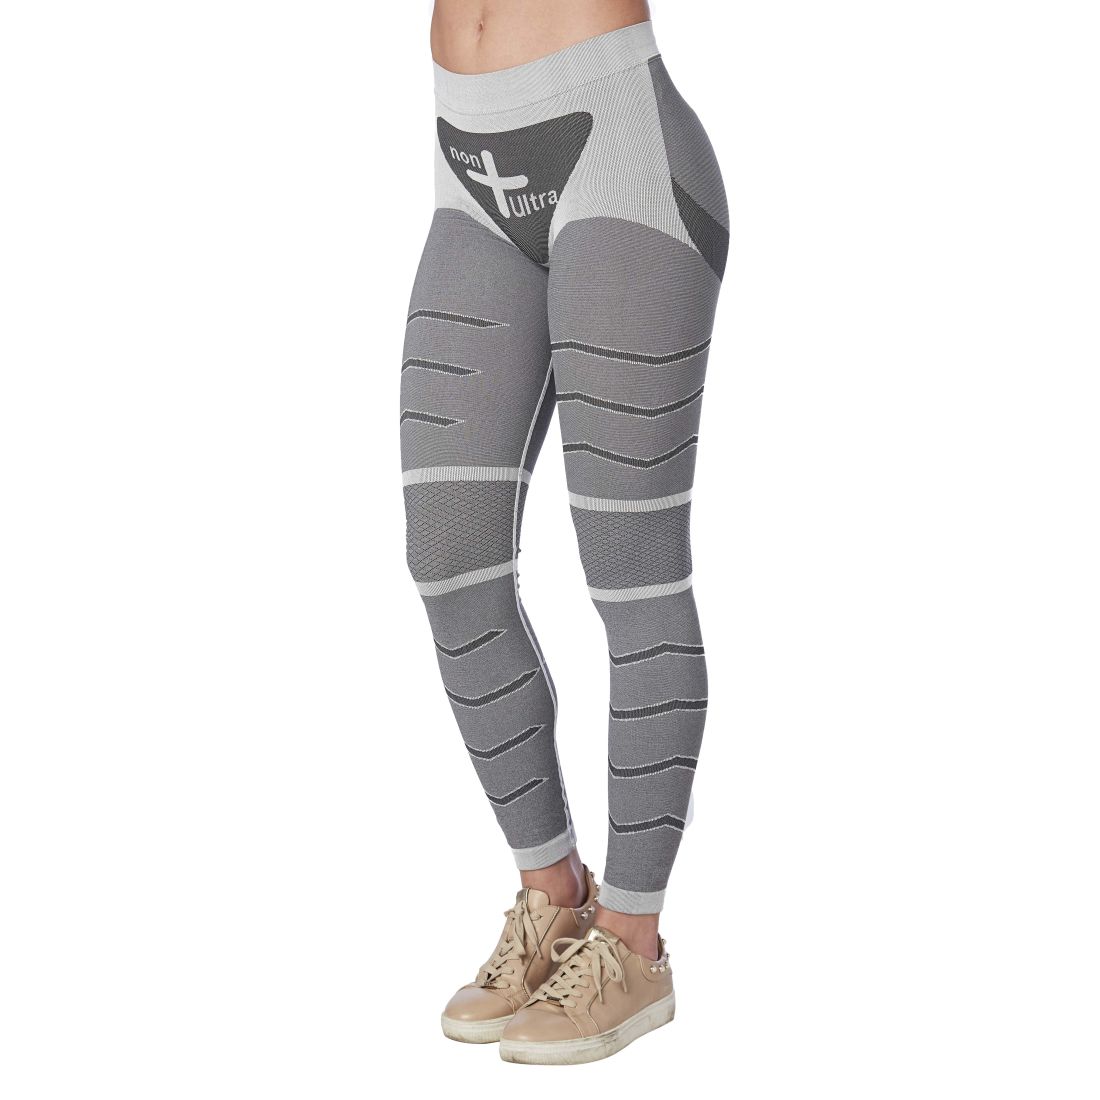 Thermal sports leggings - Sports Leggings - Sportswear - CLOTHING